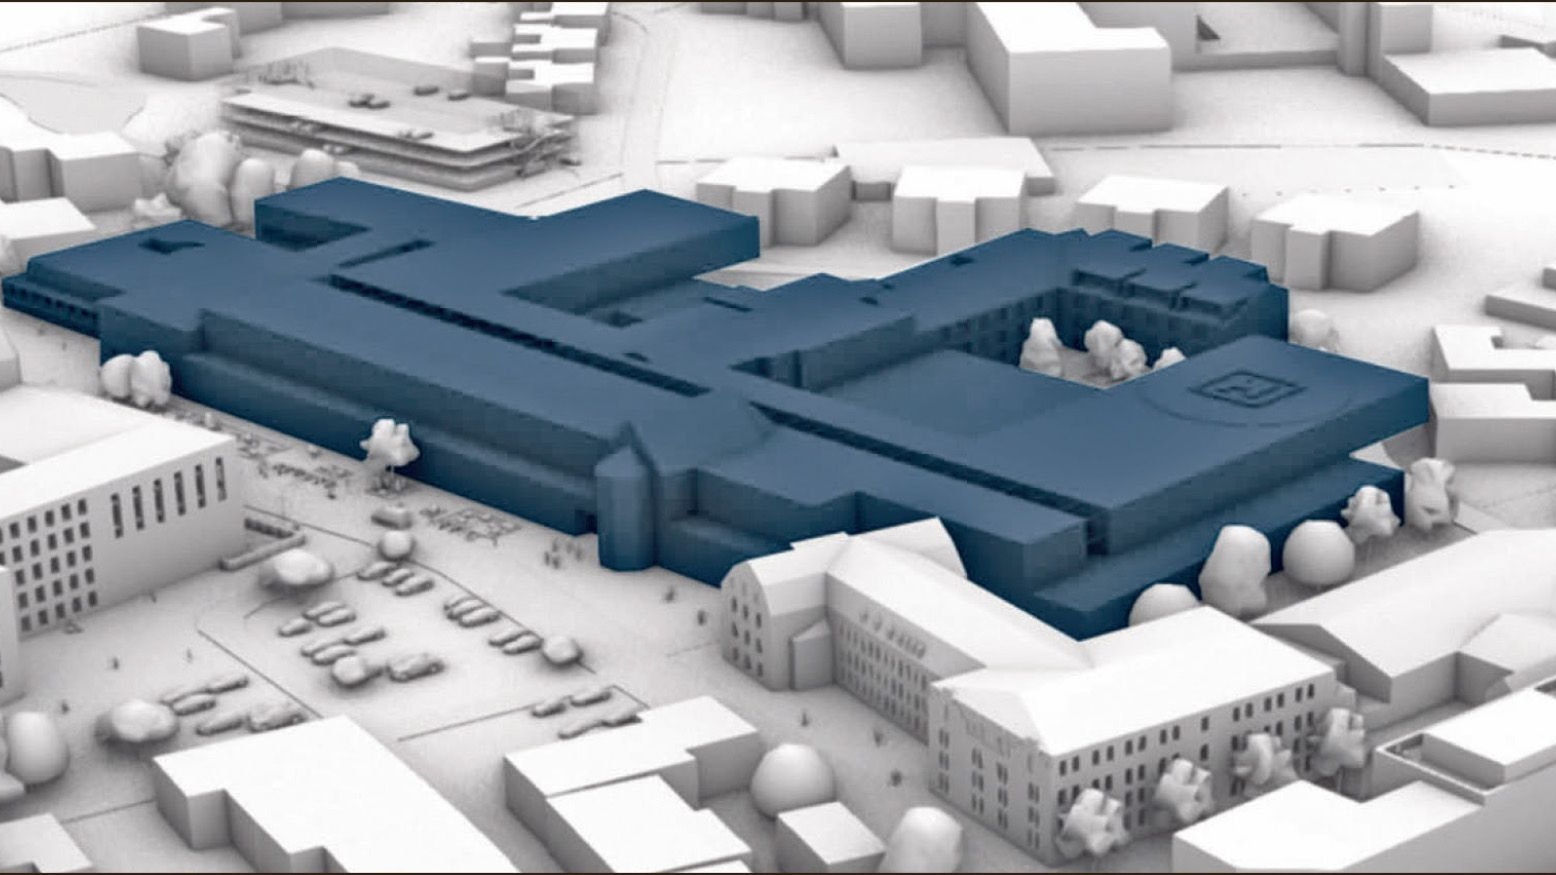 Das ist die erste Entwurfskizze des künftigen Klinikums Vechta-Lohne. 27.000 Quadratmeter Nutzfläche und 450 Planbetten soll das neue Zentralkrankenhaus haben. Skizze: Architekten t+p